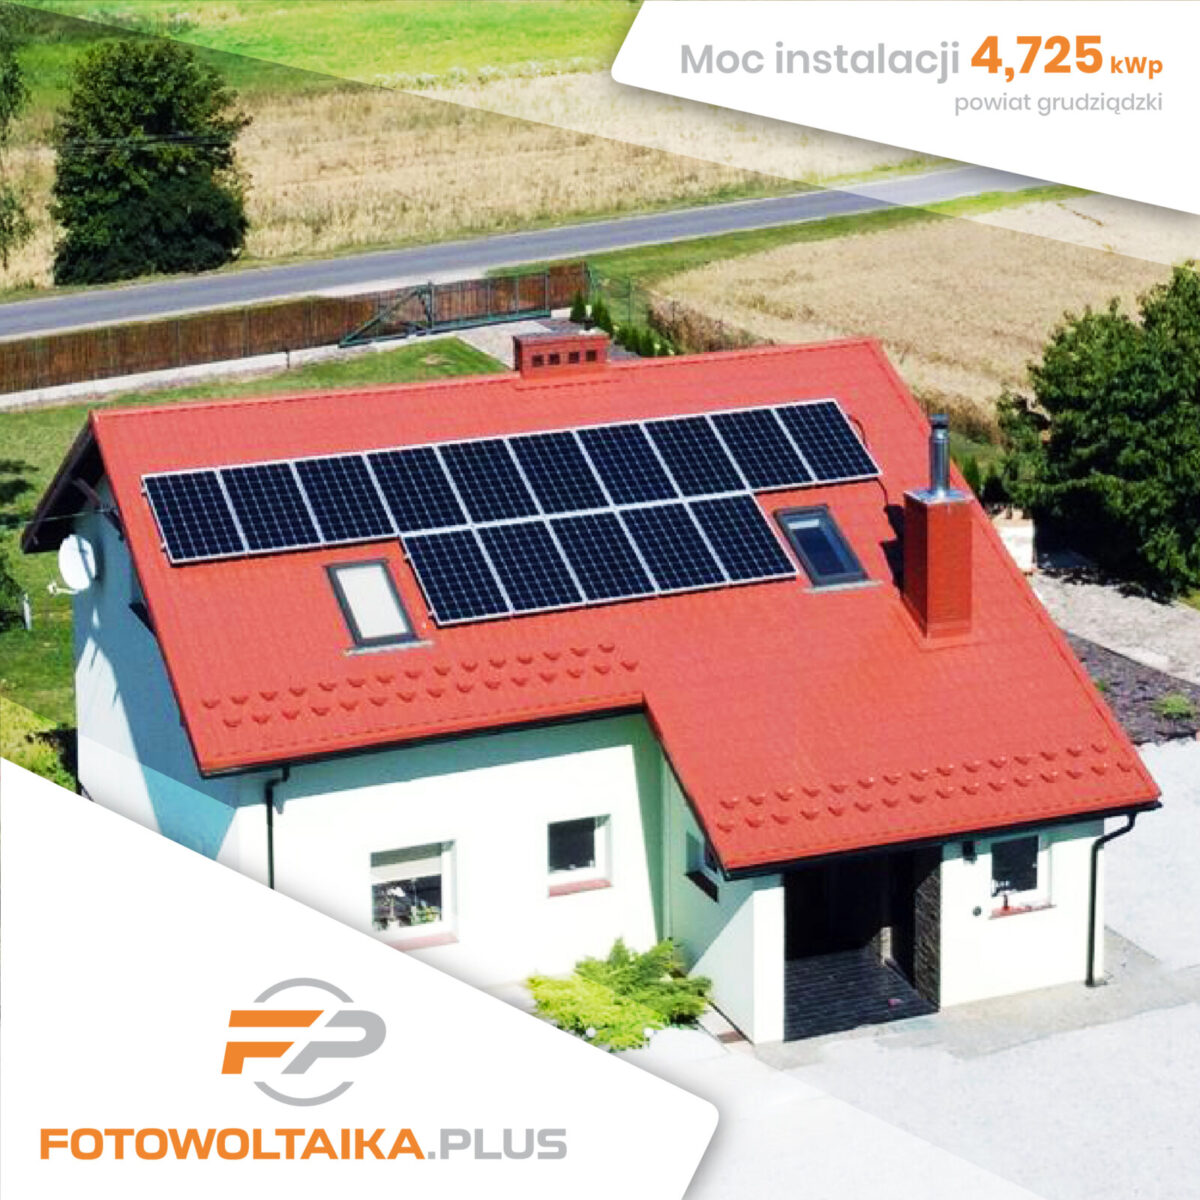 instalacja fotowoltaiczna powiat grudziądzki 4,725 kWp